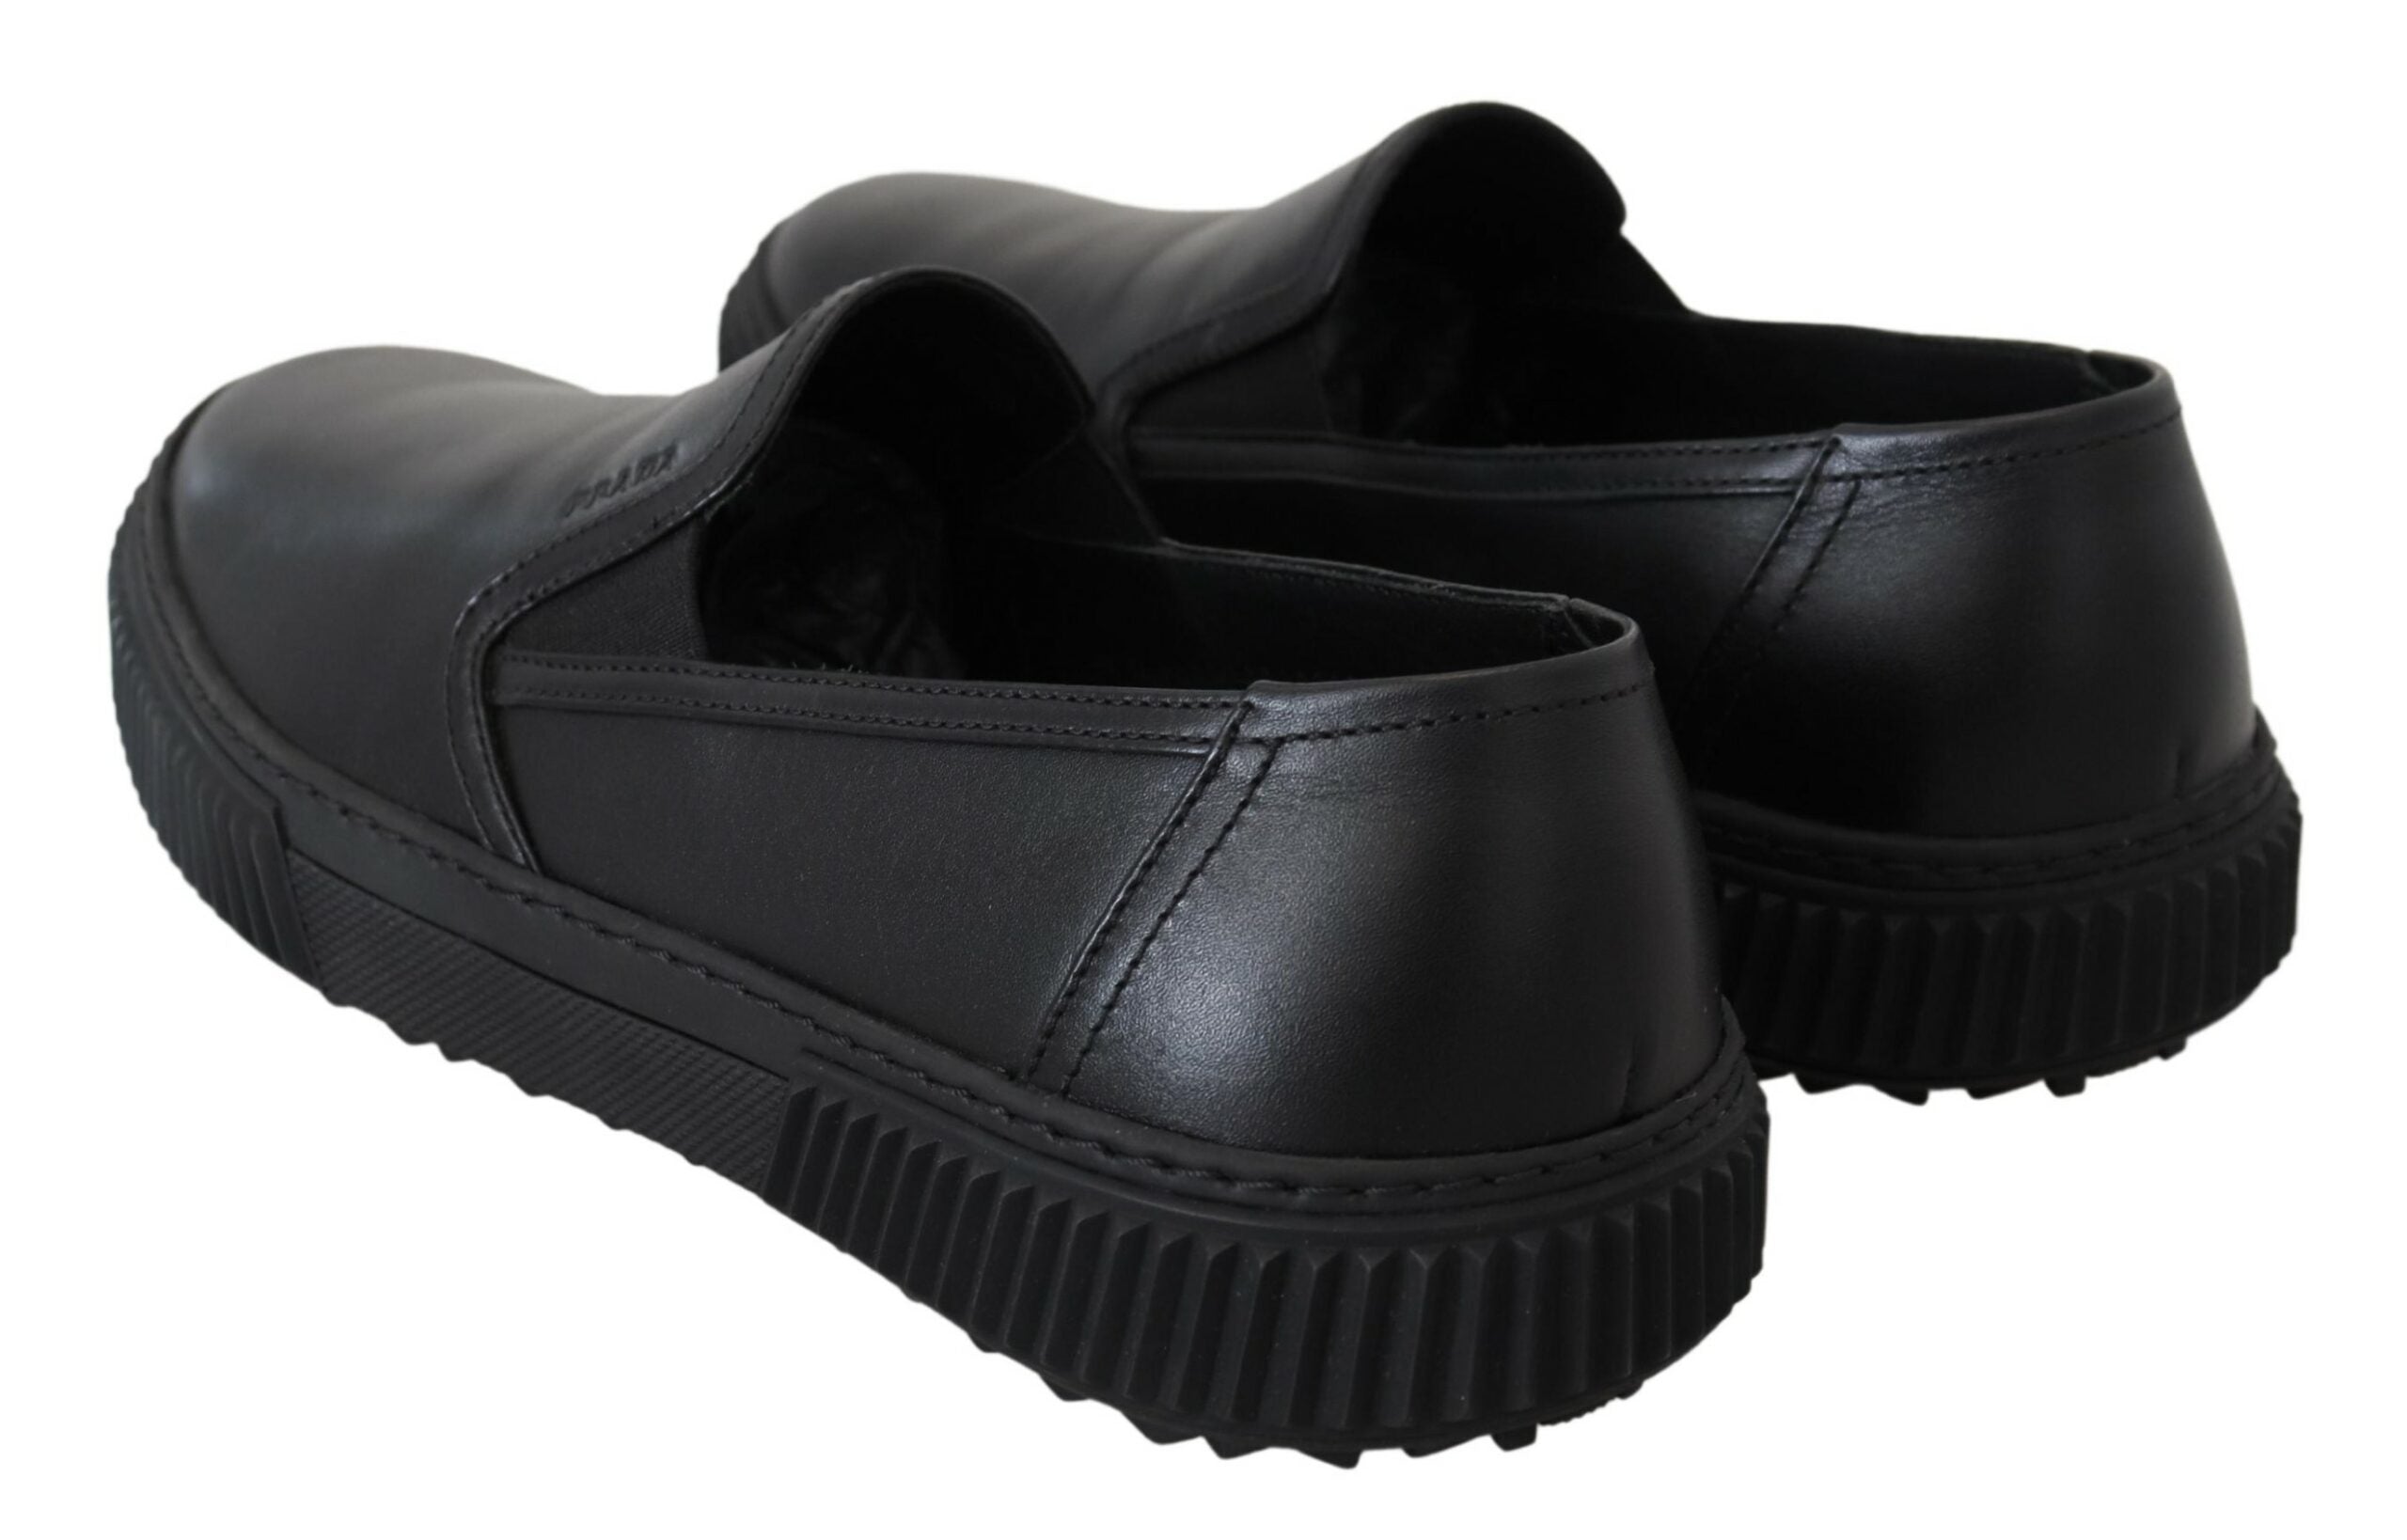 Prada Sleek Black Low-Top Leather Sneakers